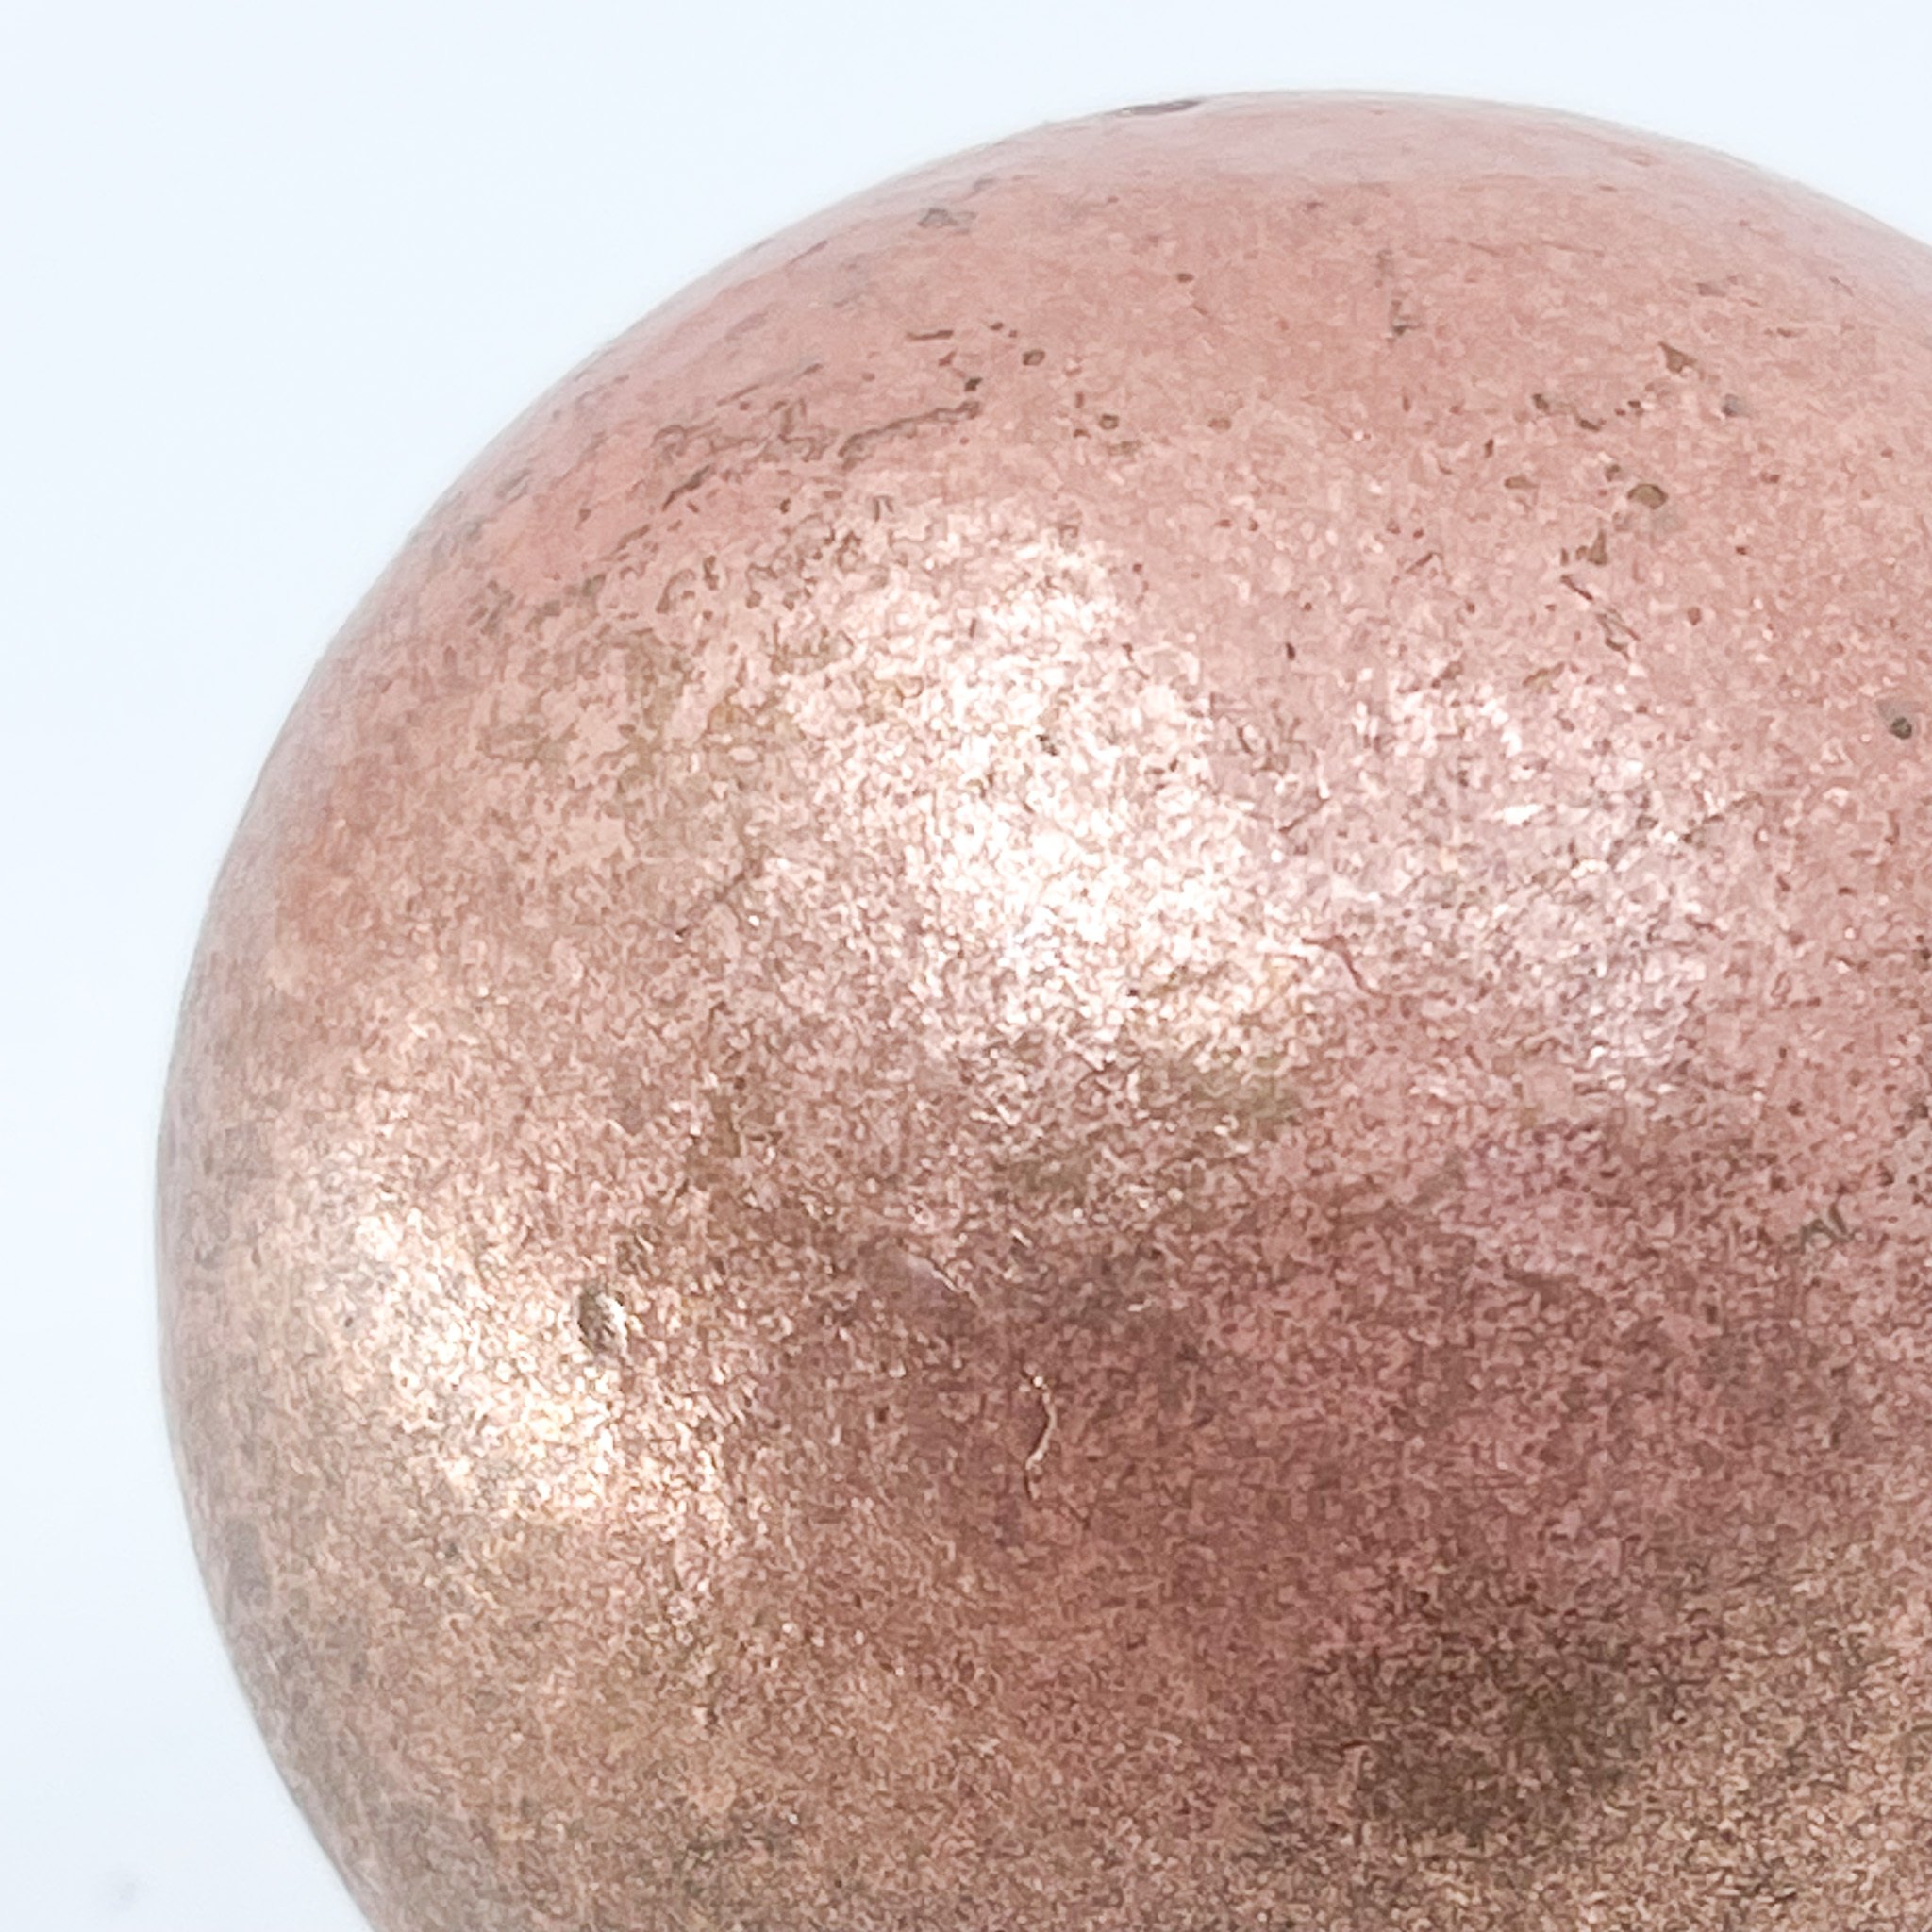 Copper sphere